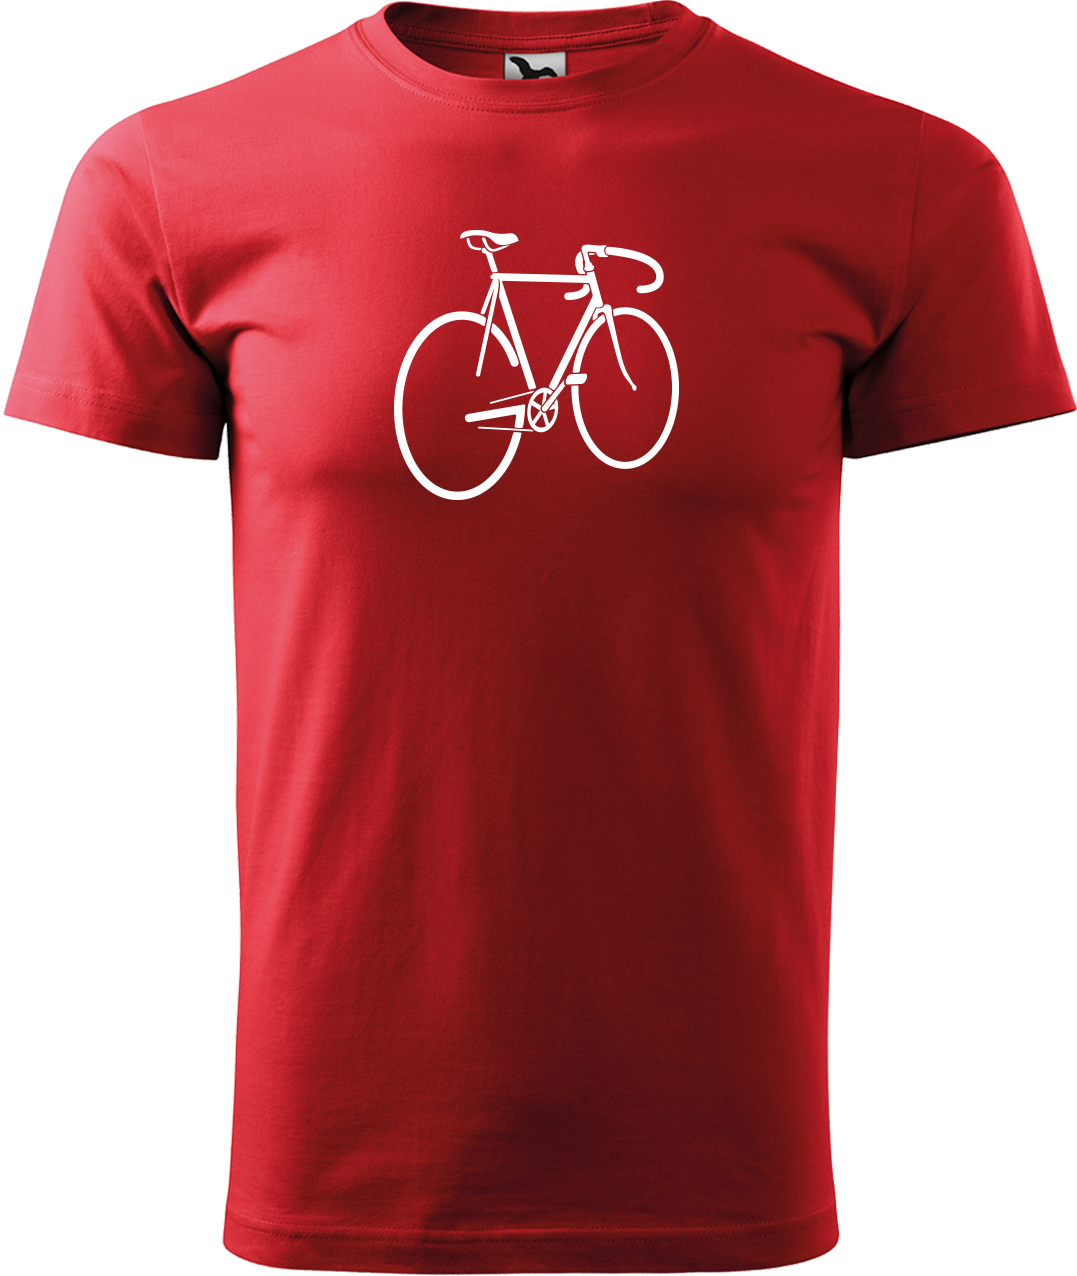 Pánské tričko s kolem - Pánské kolo Velikost: 3XL, Barva: Červená (07)